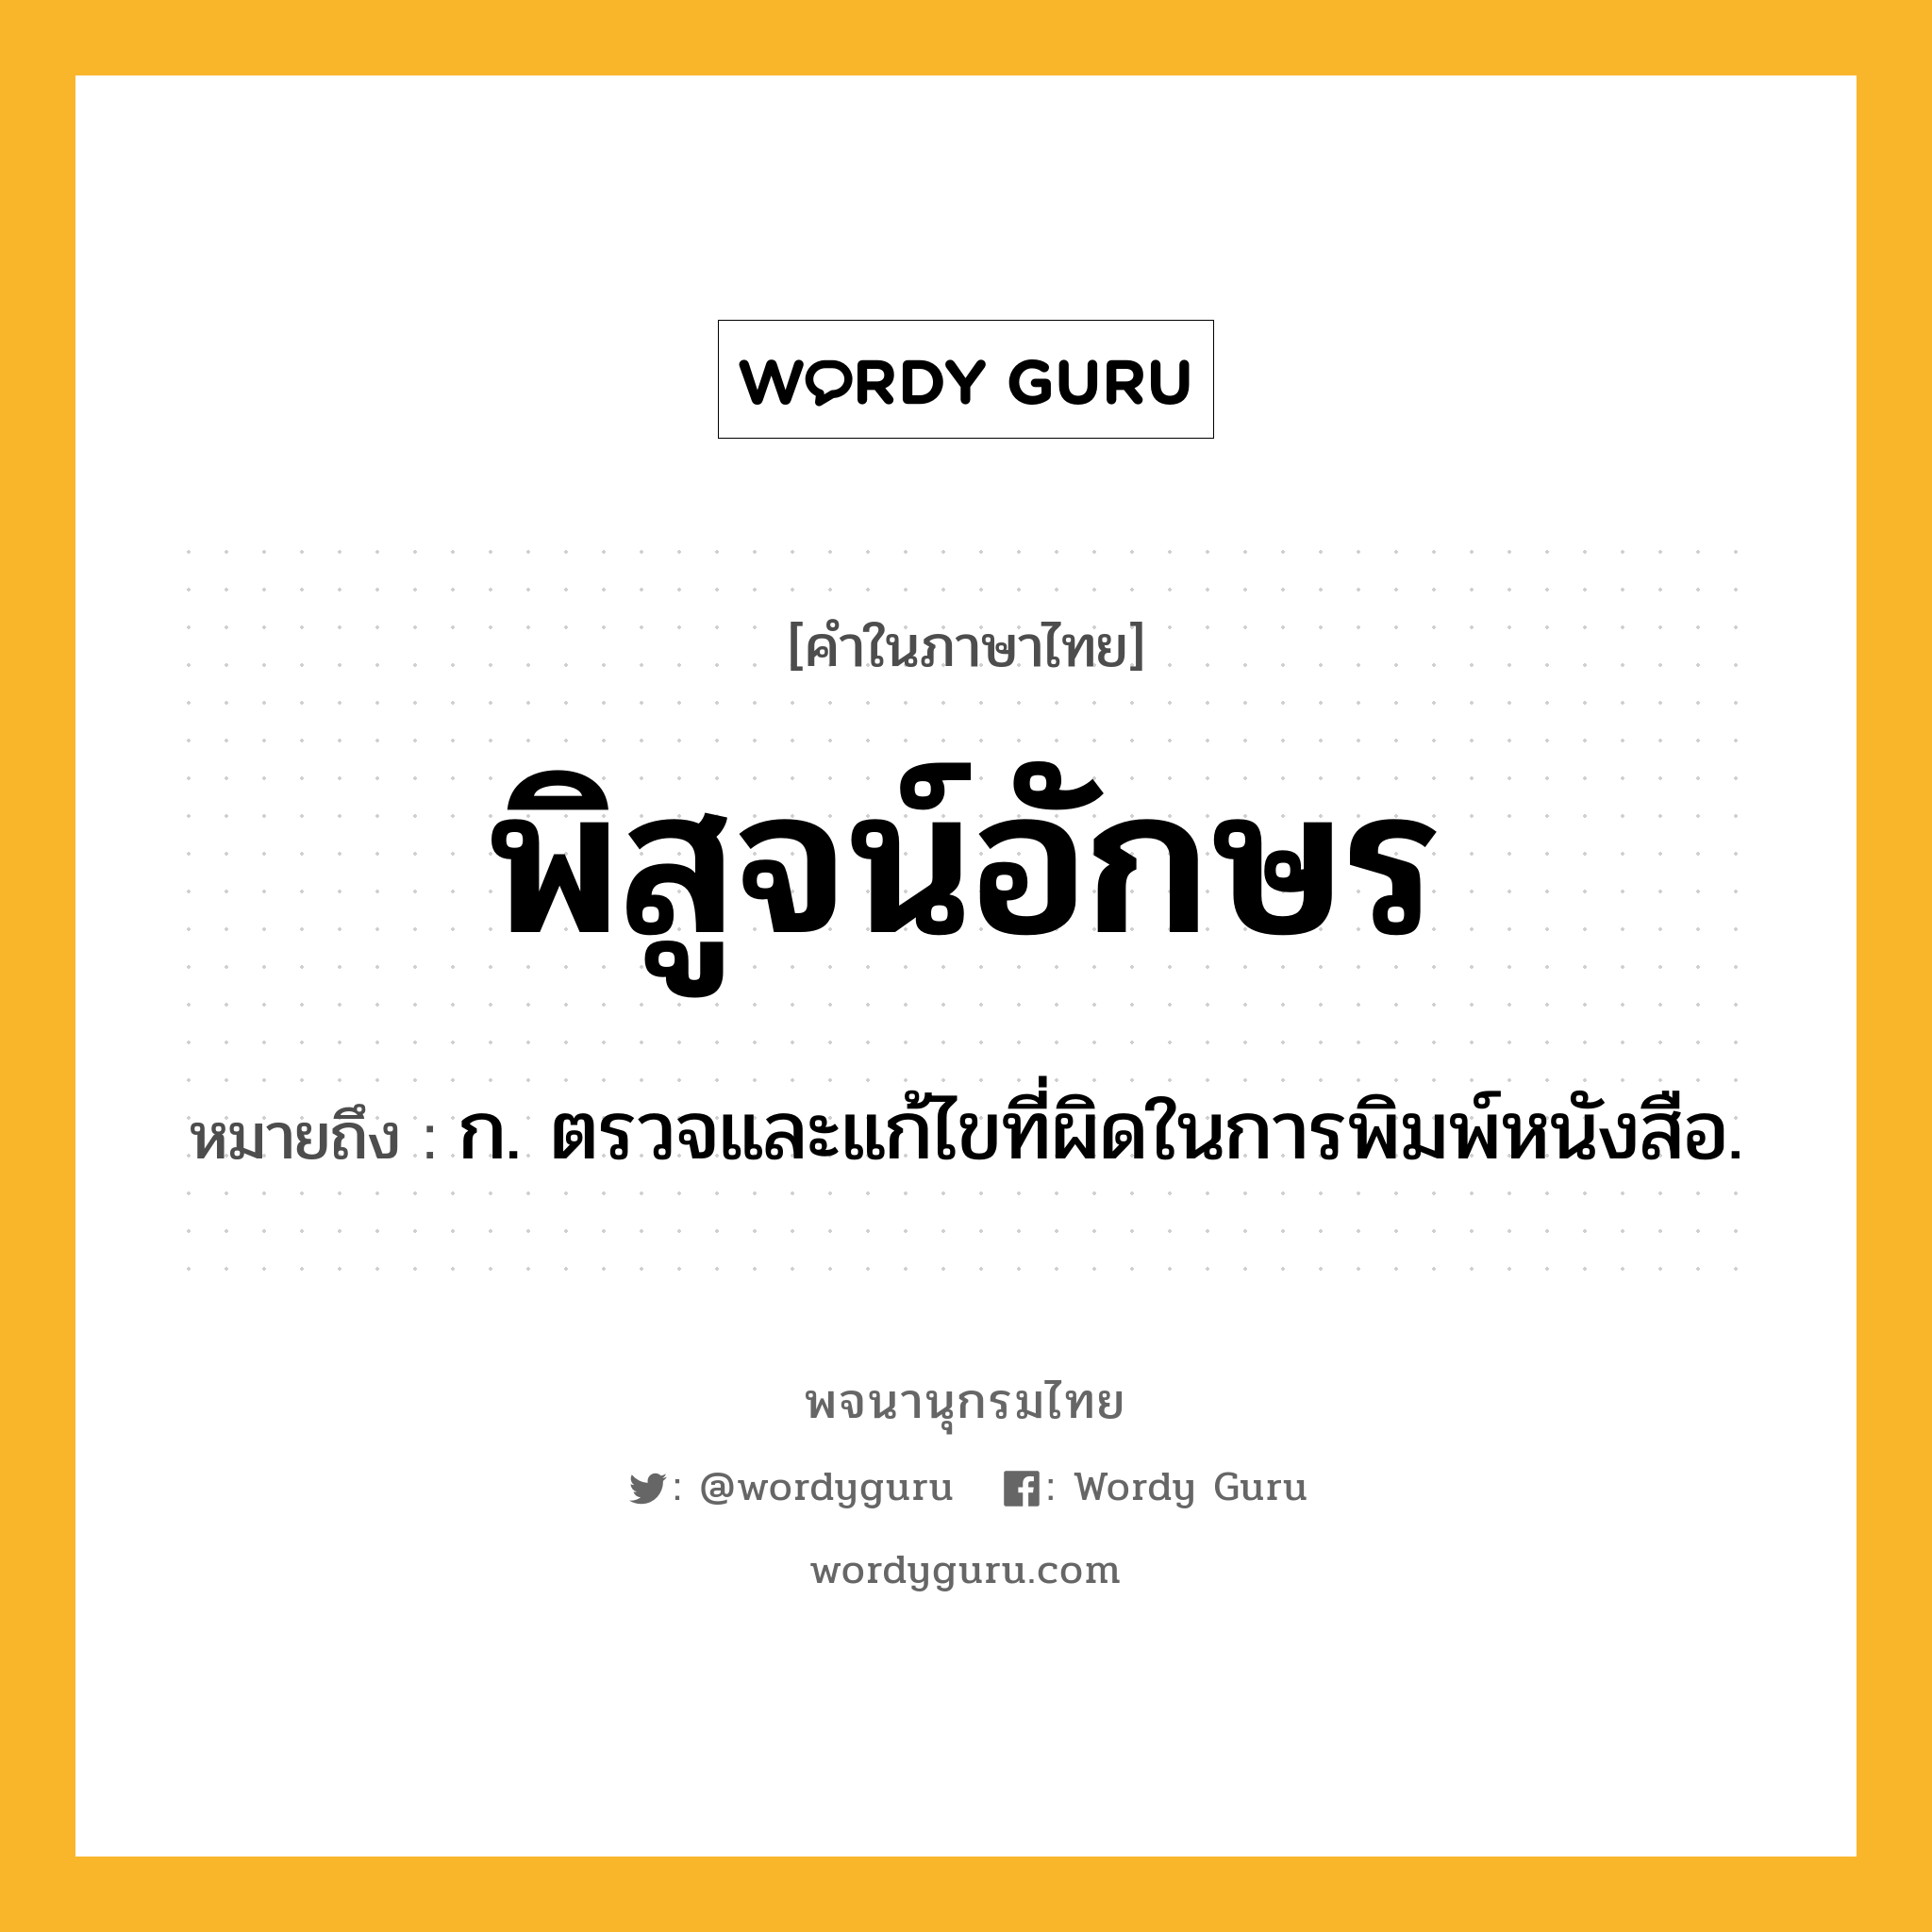 พิสูจน์อักษร หมายถึงอะไร?, คำในภาษาไทย พิสูจน์อักษร หมายถึง ก. ตรวจและแก้ไขที่ผิดในการพิมพ์หนังสือ.